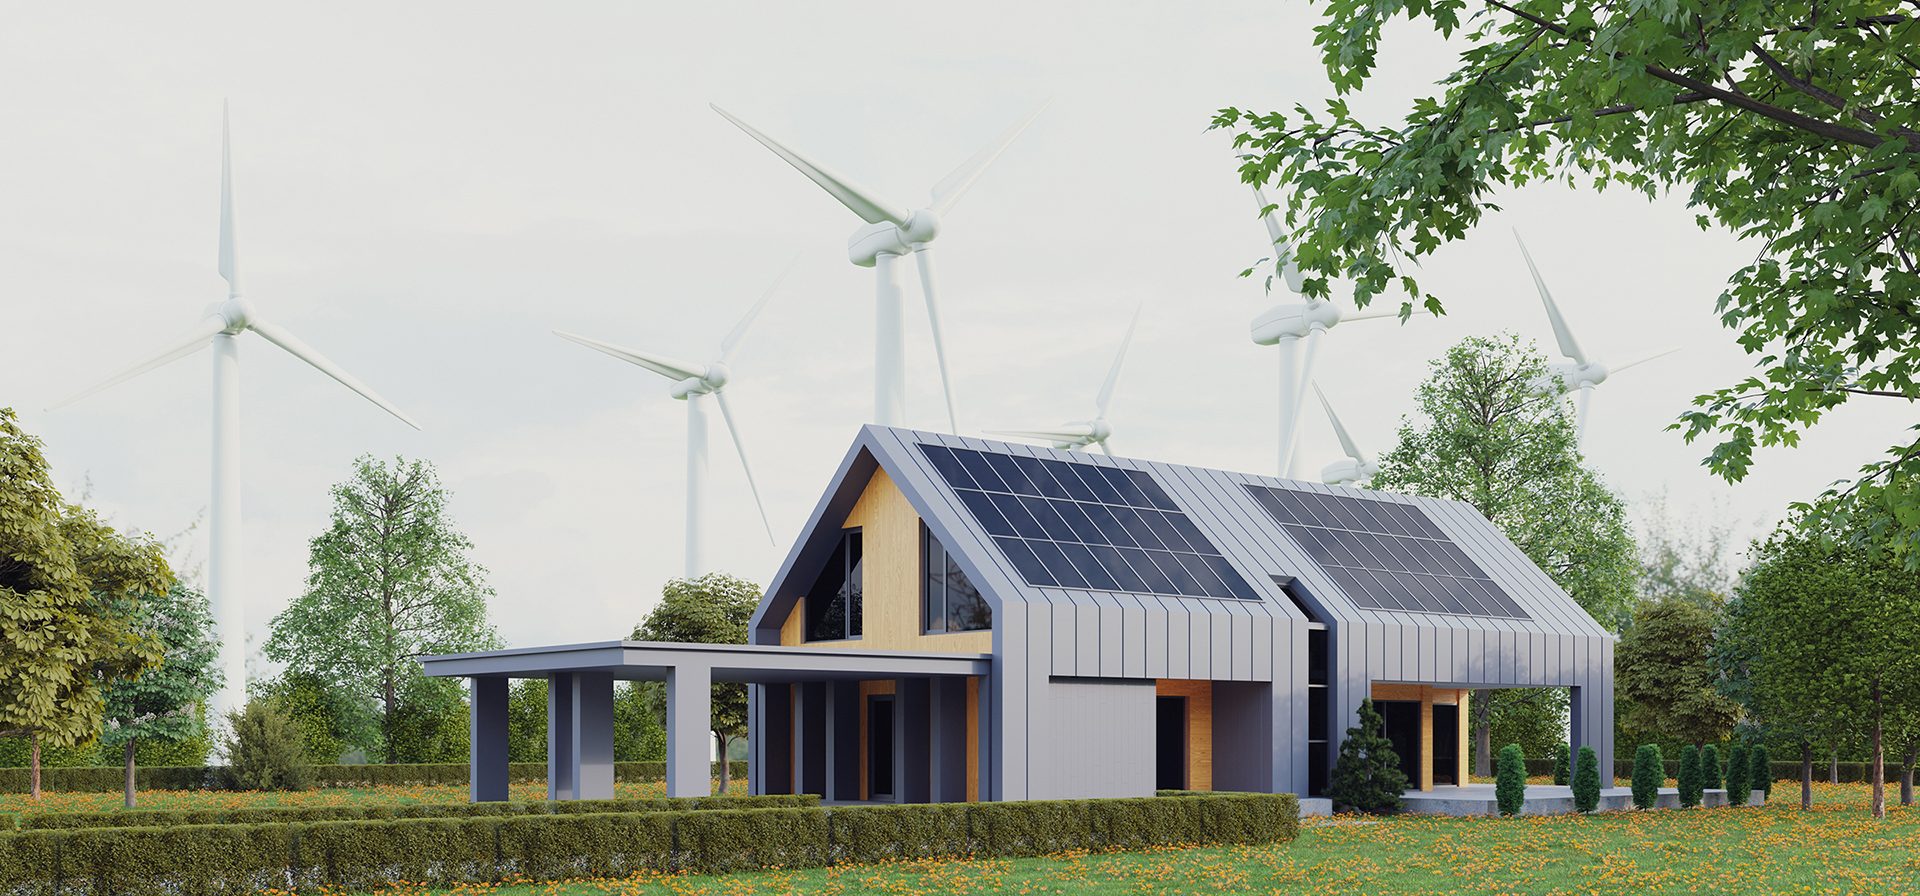 Ambiente ed efficienza energetica  Ottimizzare l'uso delle risorse energetiche, ridurre l'impatto ambientale e migliorare l'efficienza energetica dei tuoi edifici e delle tue infrastrutture